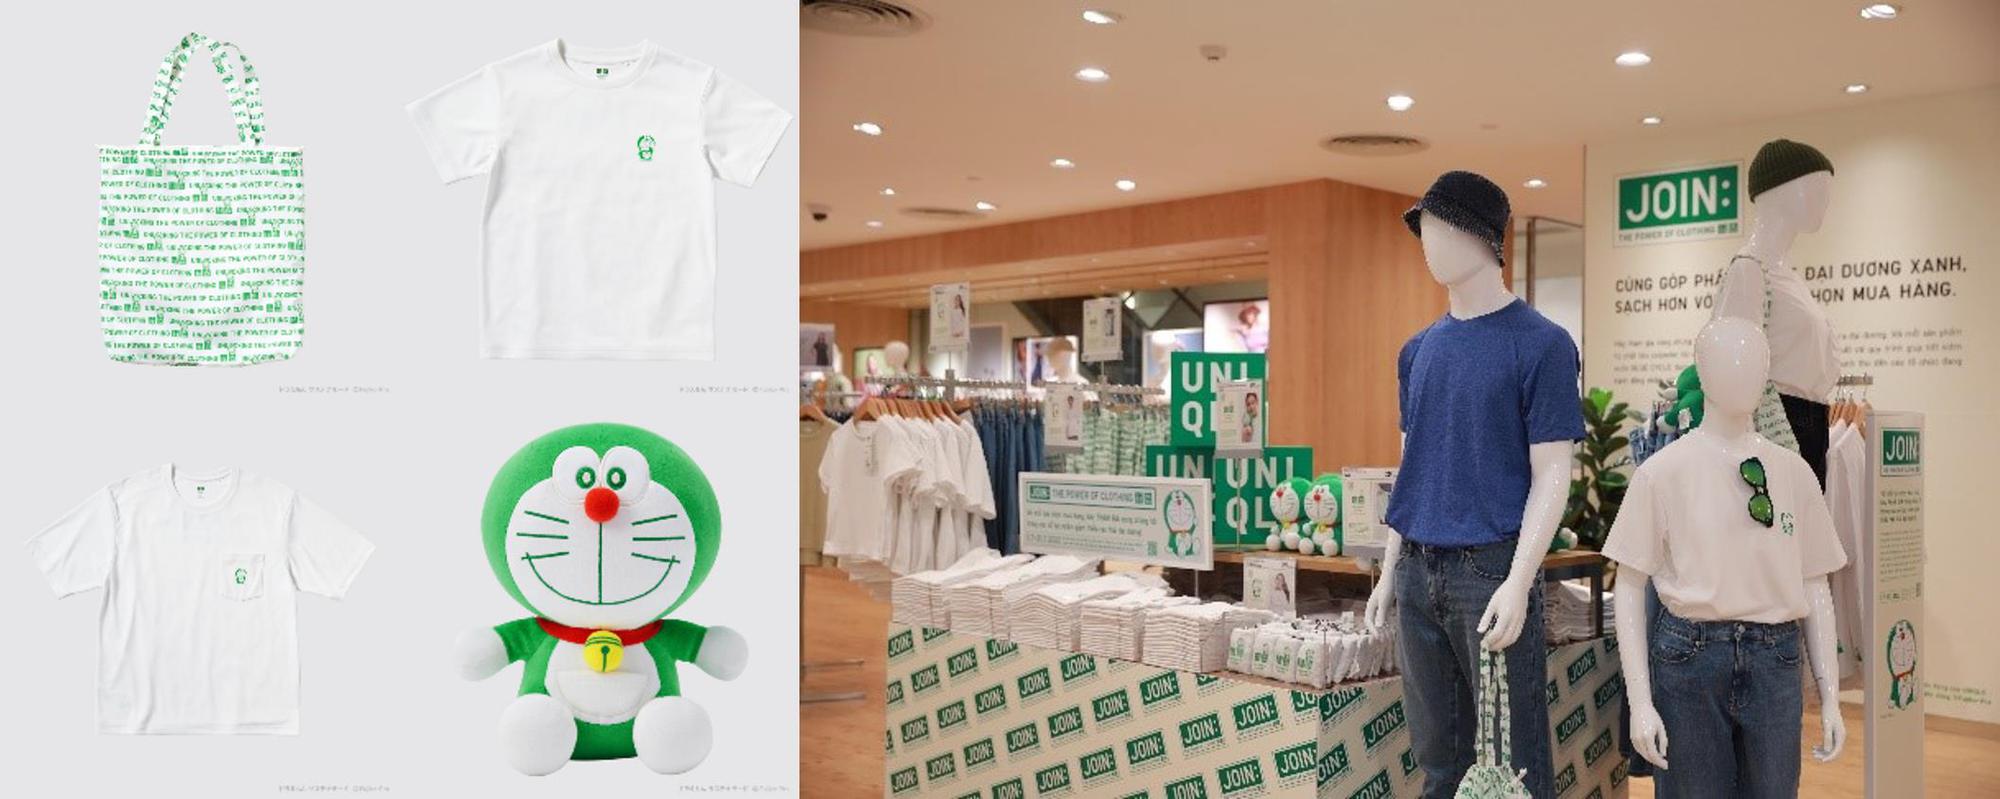 Uniqlo ra mắt bộ sưu tập Doraemon xanh lá 100% từ chất liệu tái chế, thông điệp phát triển bền vững chưa bao giờ gần gũi đến thế! - Ảnh 2.